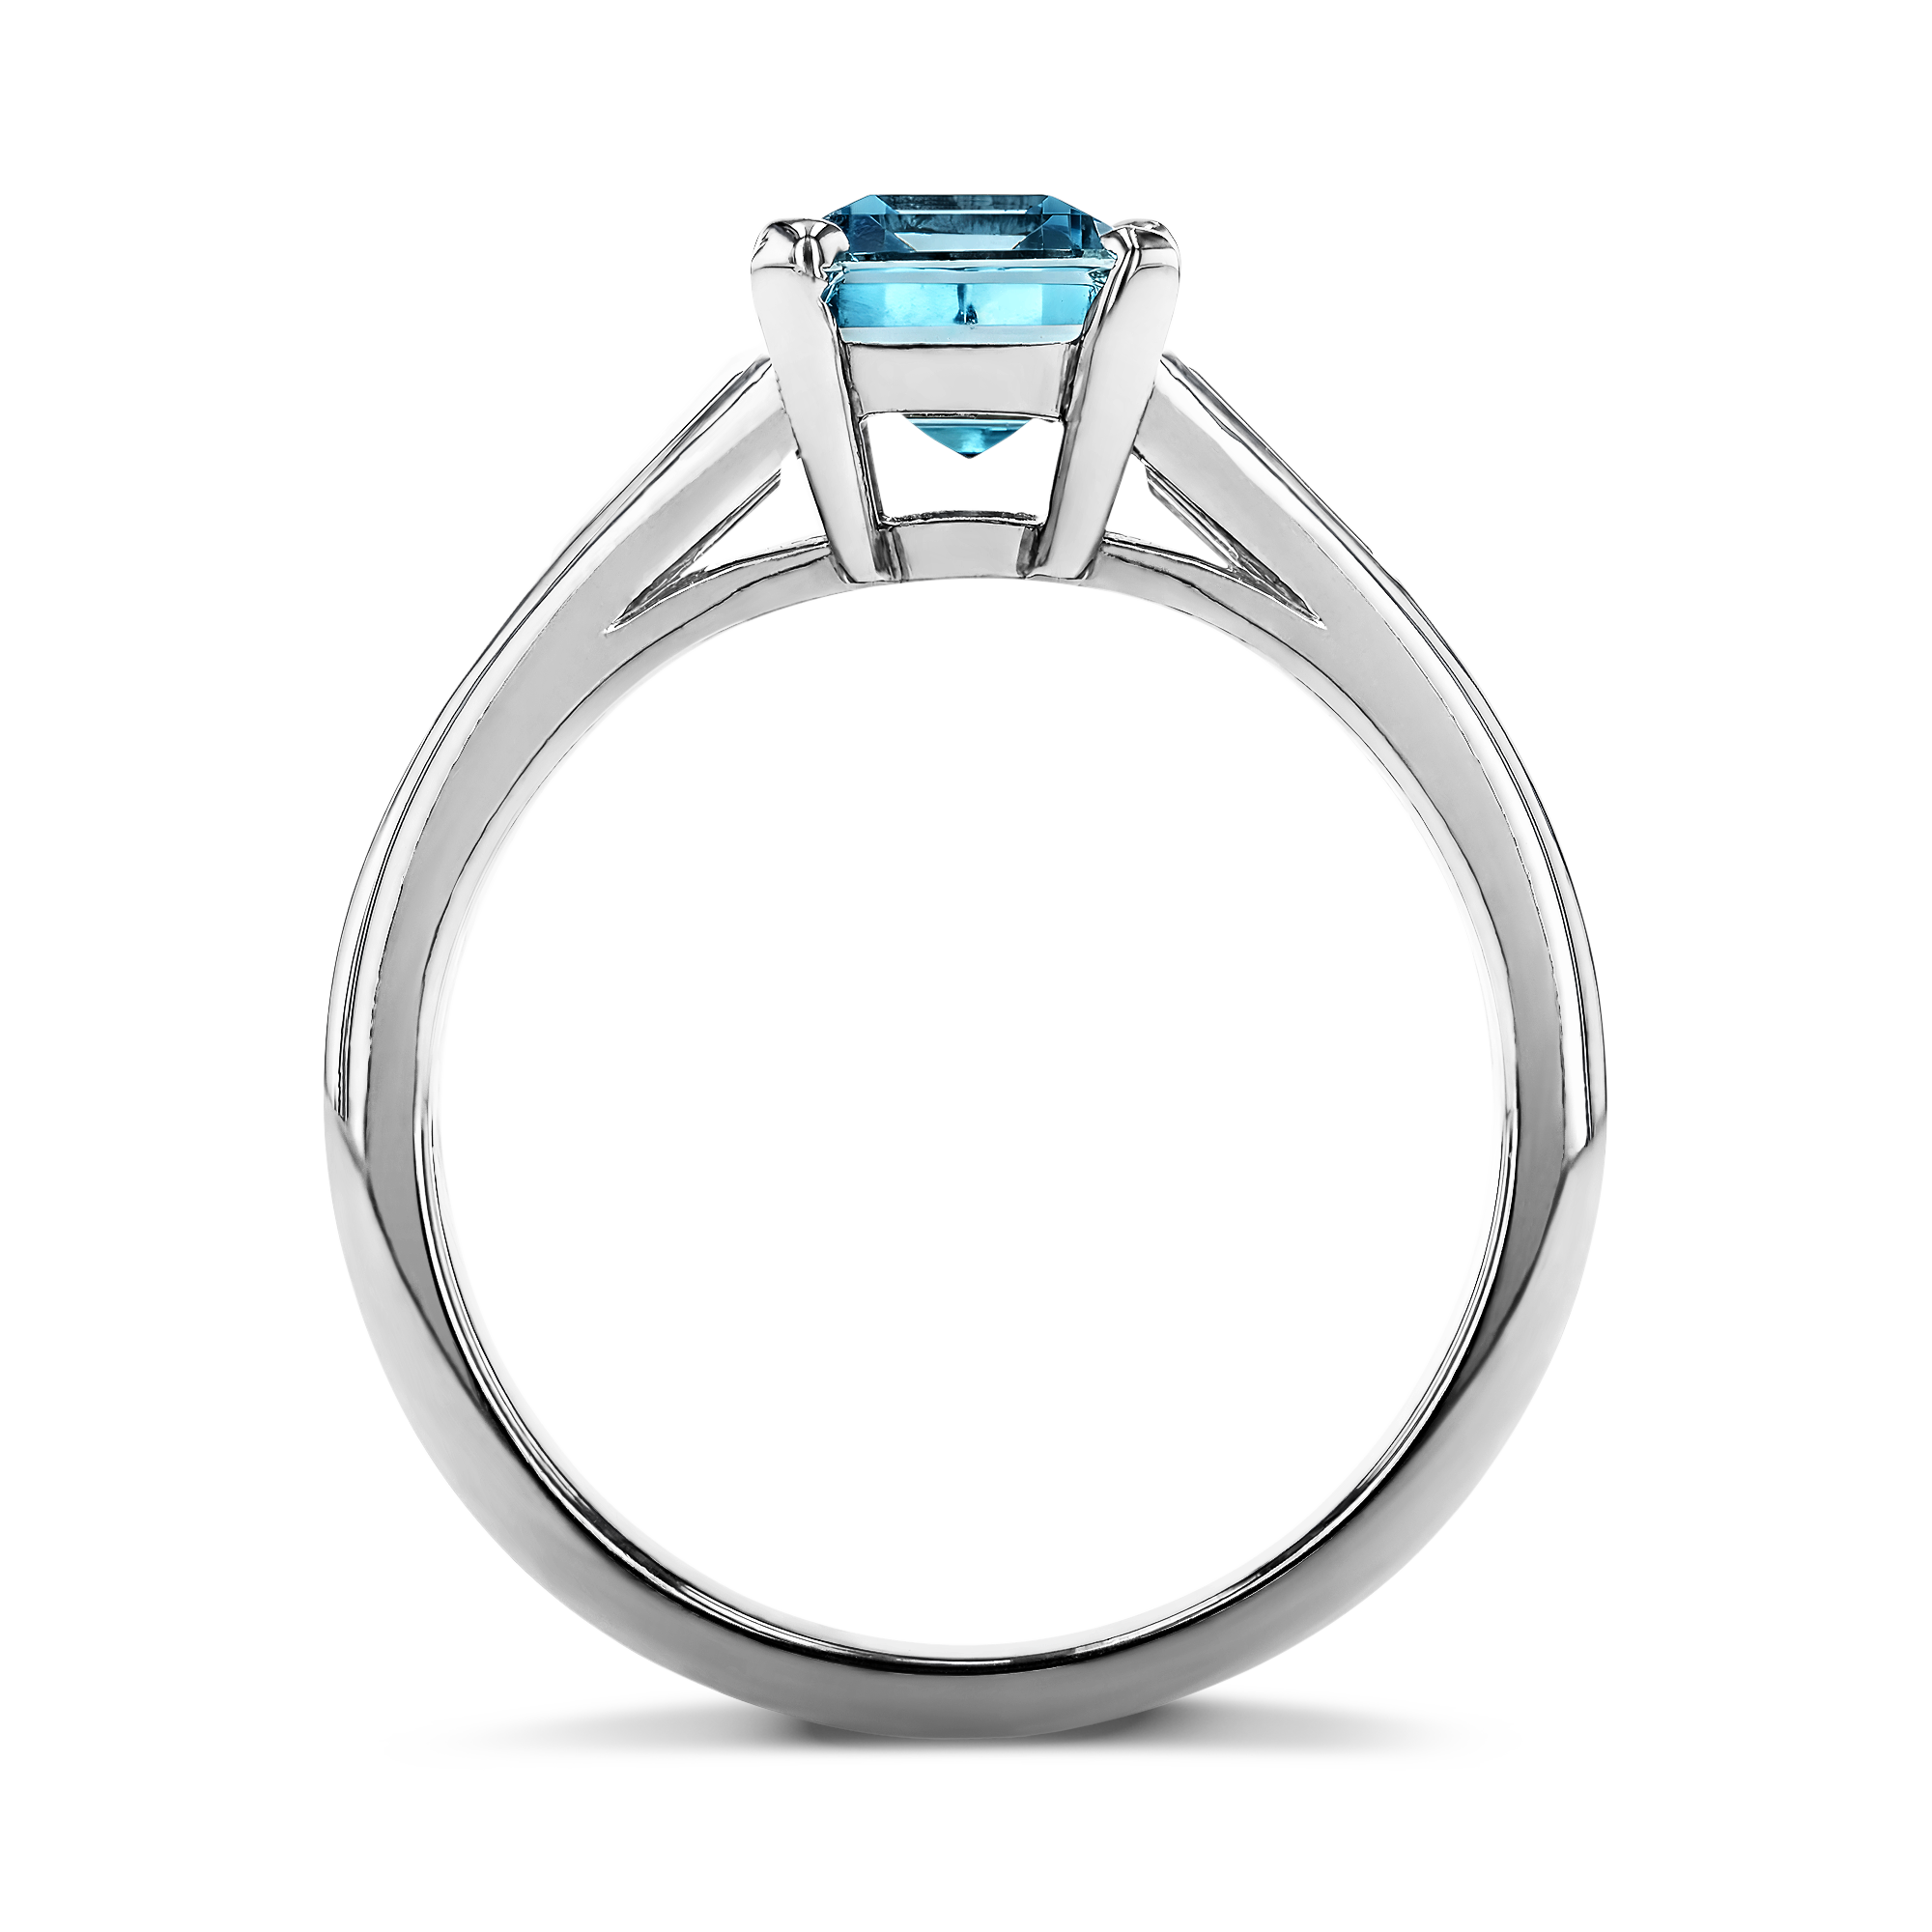 Octagonal Cut Aquamarine Ring 1.51ct in Platinum - Octagon Cut, Four ...